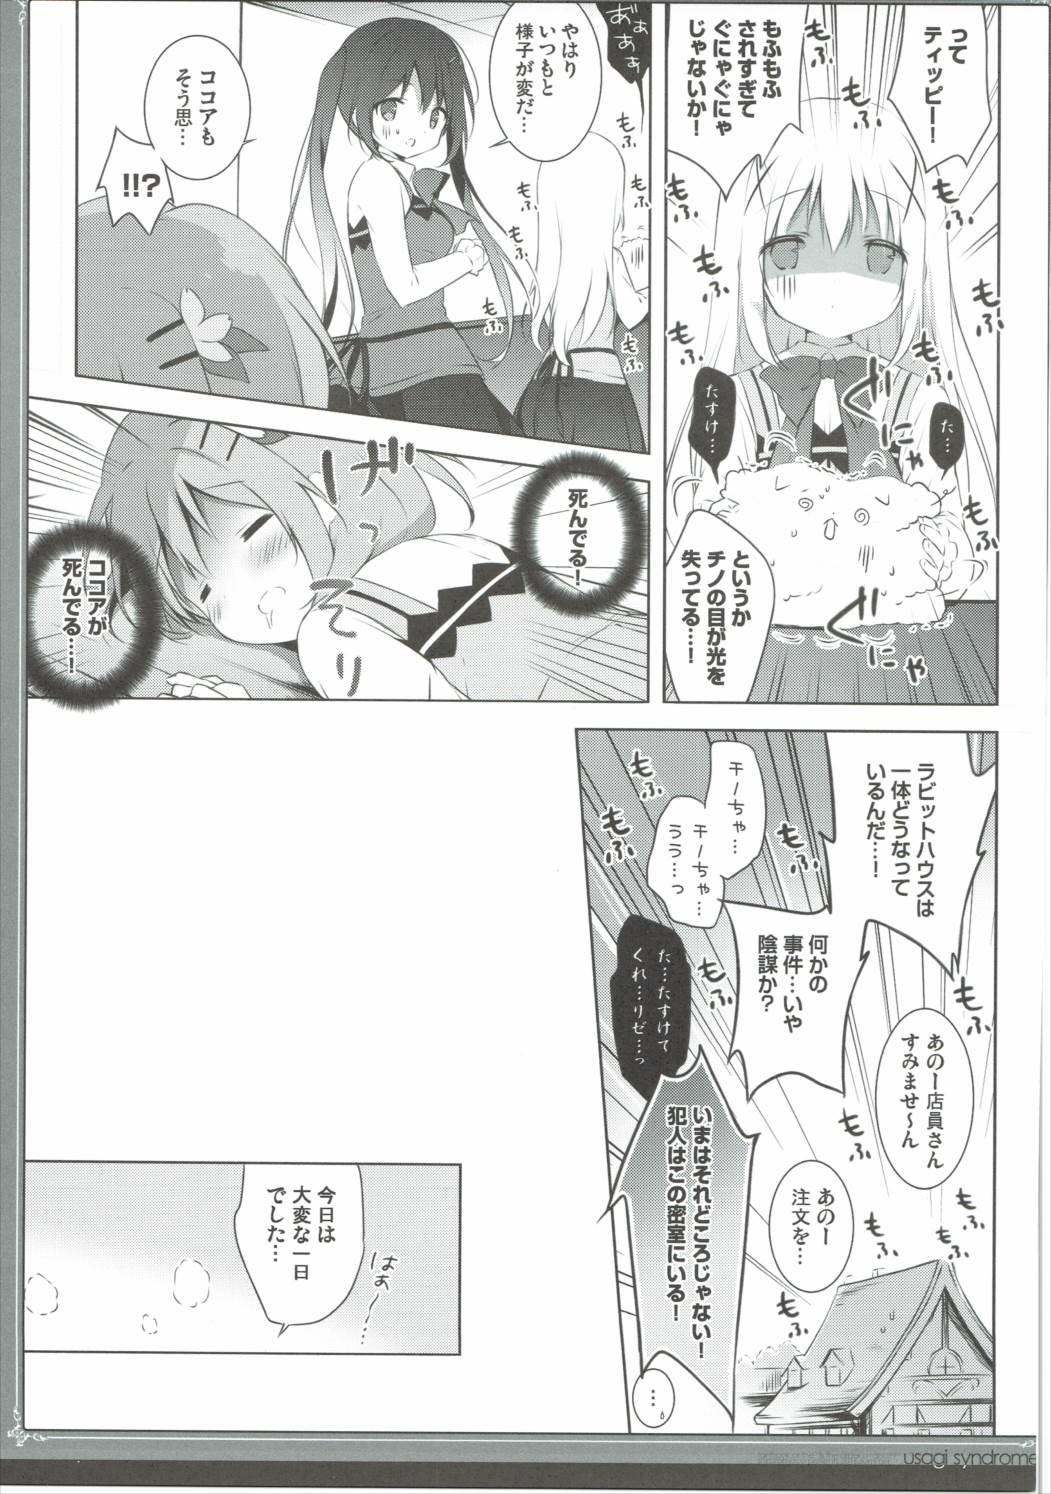 Passion Usagi Syndrome 3 - Gochuumon wa usagi desu ka Footfetish - Page 8